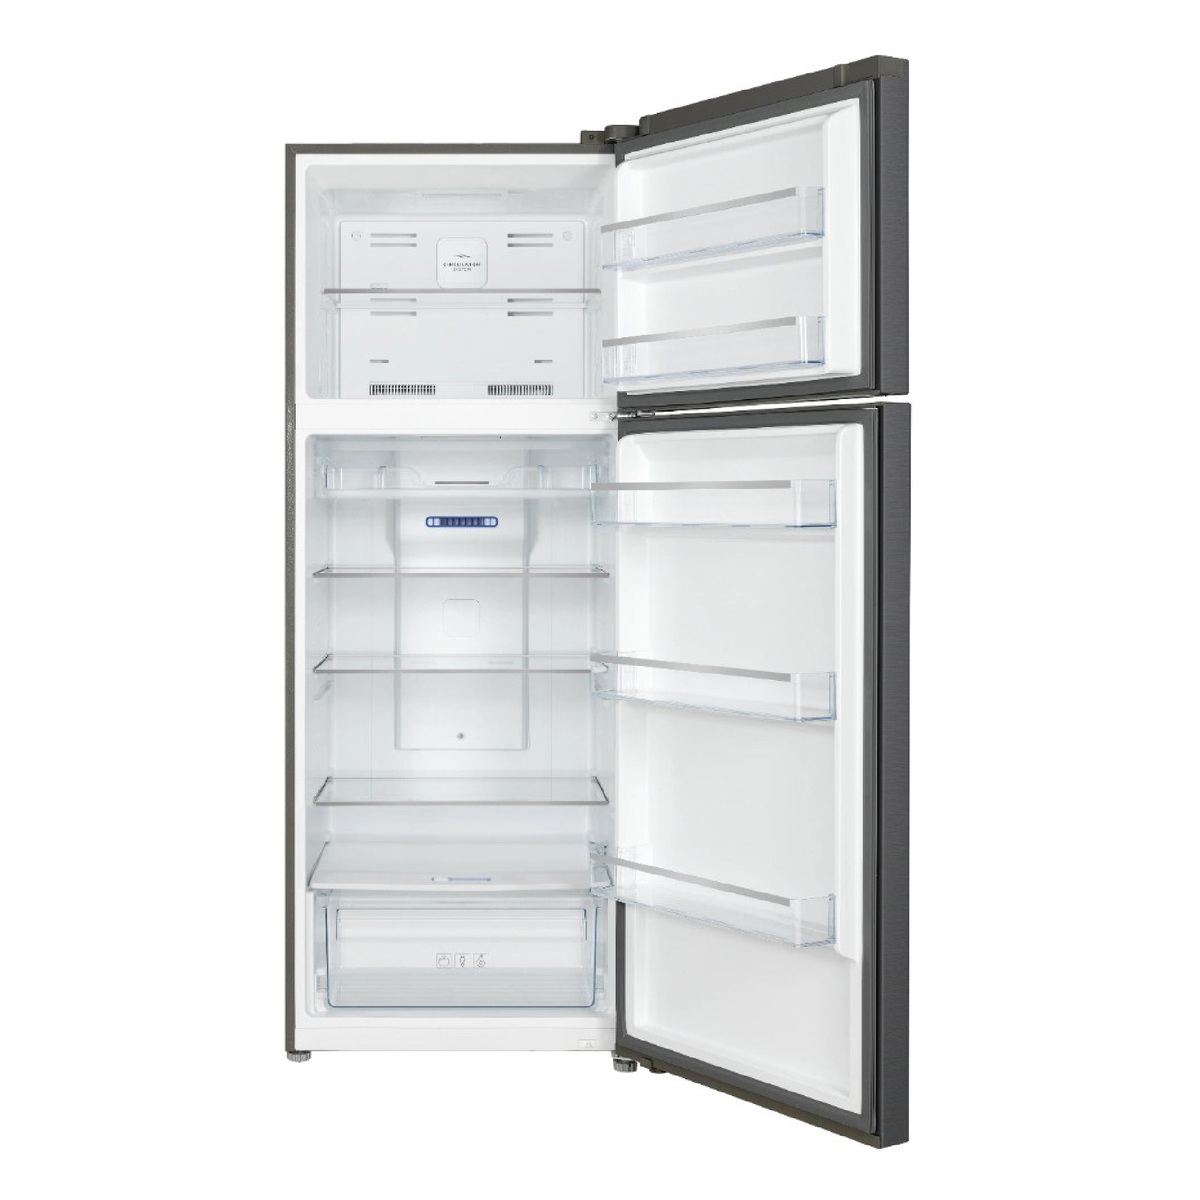 Terim Top Freezer Double Door Refrigerator, 600 L, Stainless Steel, TERR600SST